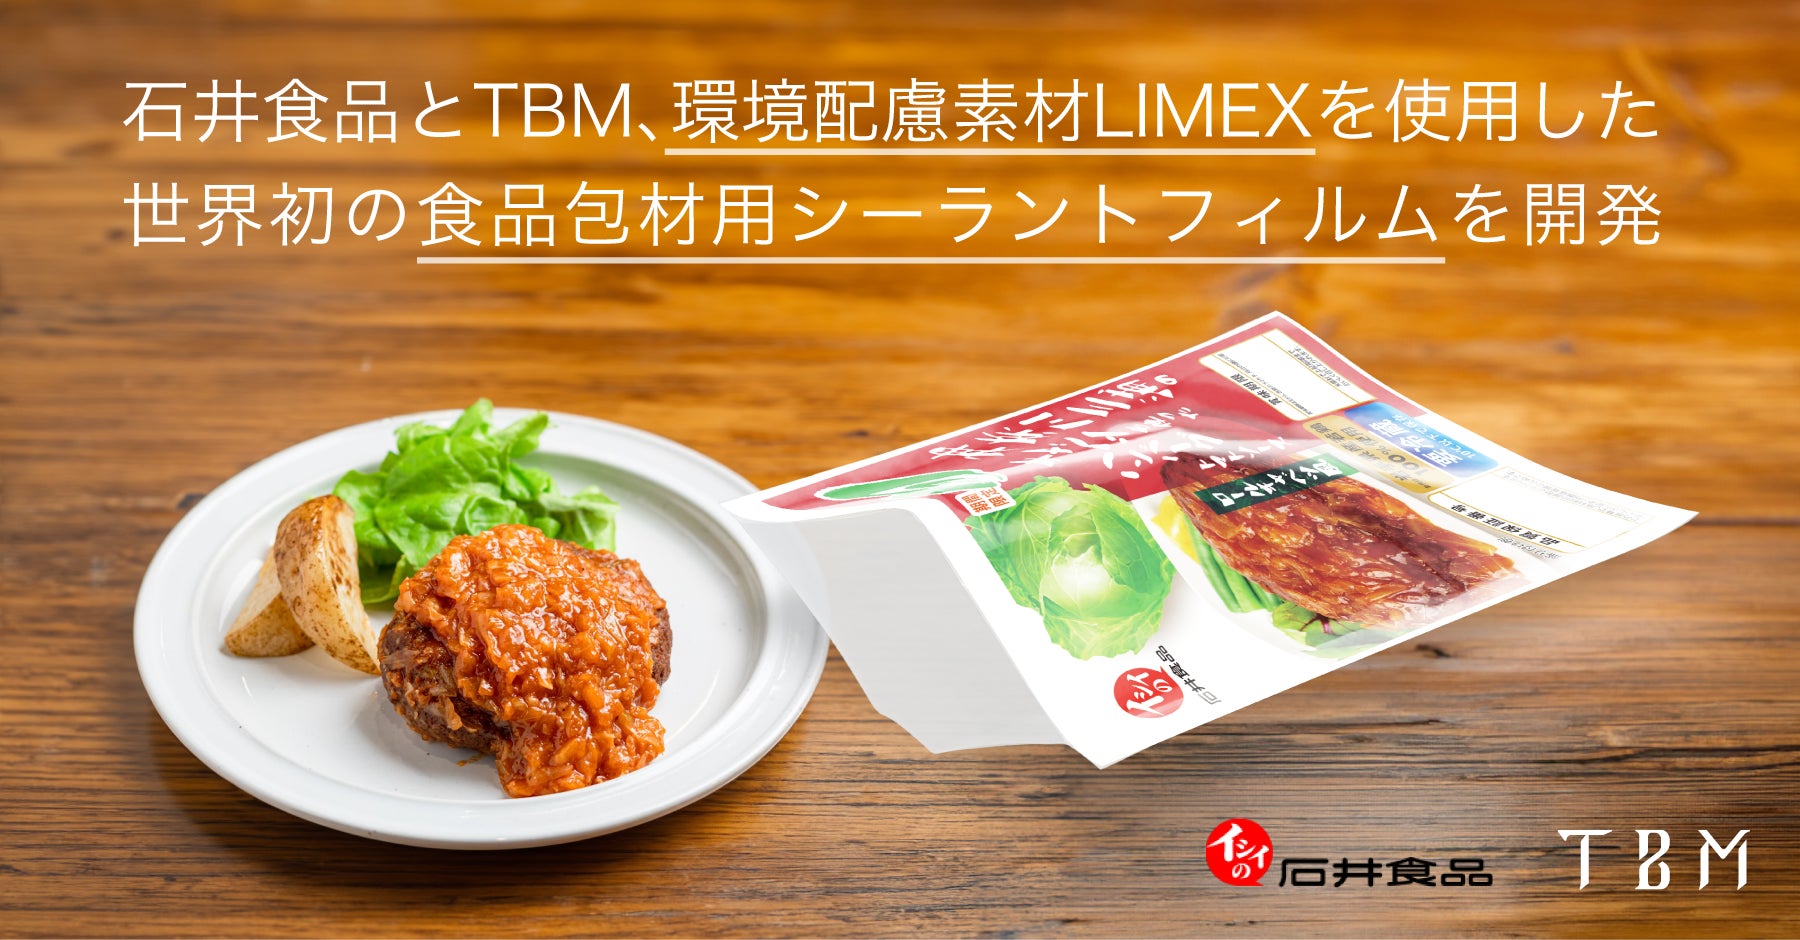 石井食品とTBM、環境配慮素材LIMEX を使用した世界初の食品包材用シーラントフィルムを開発